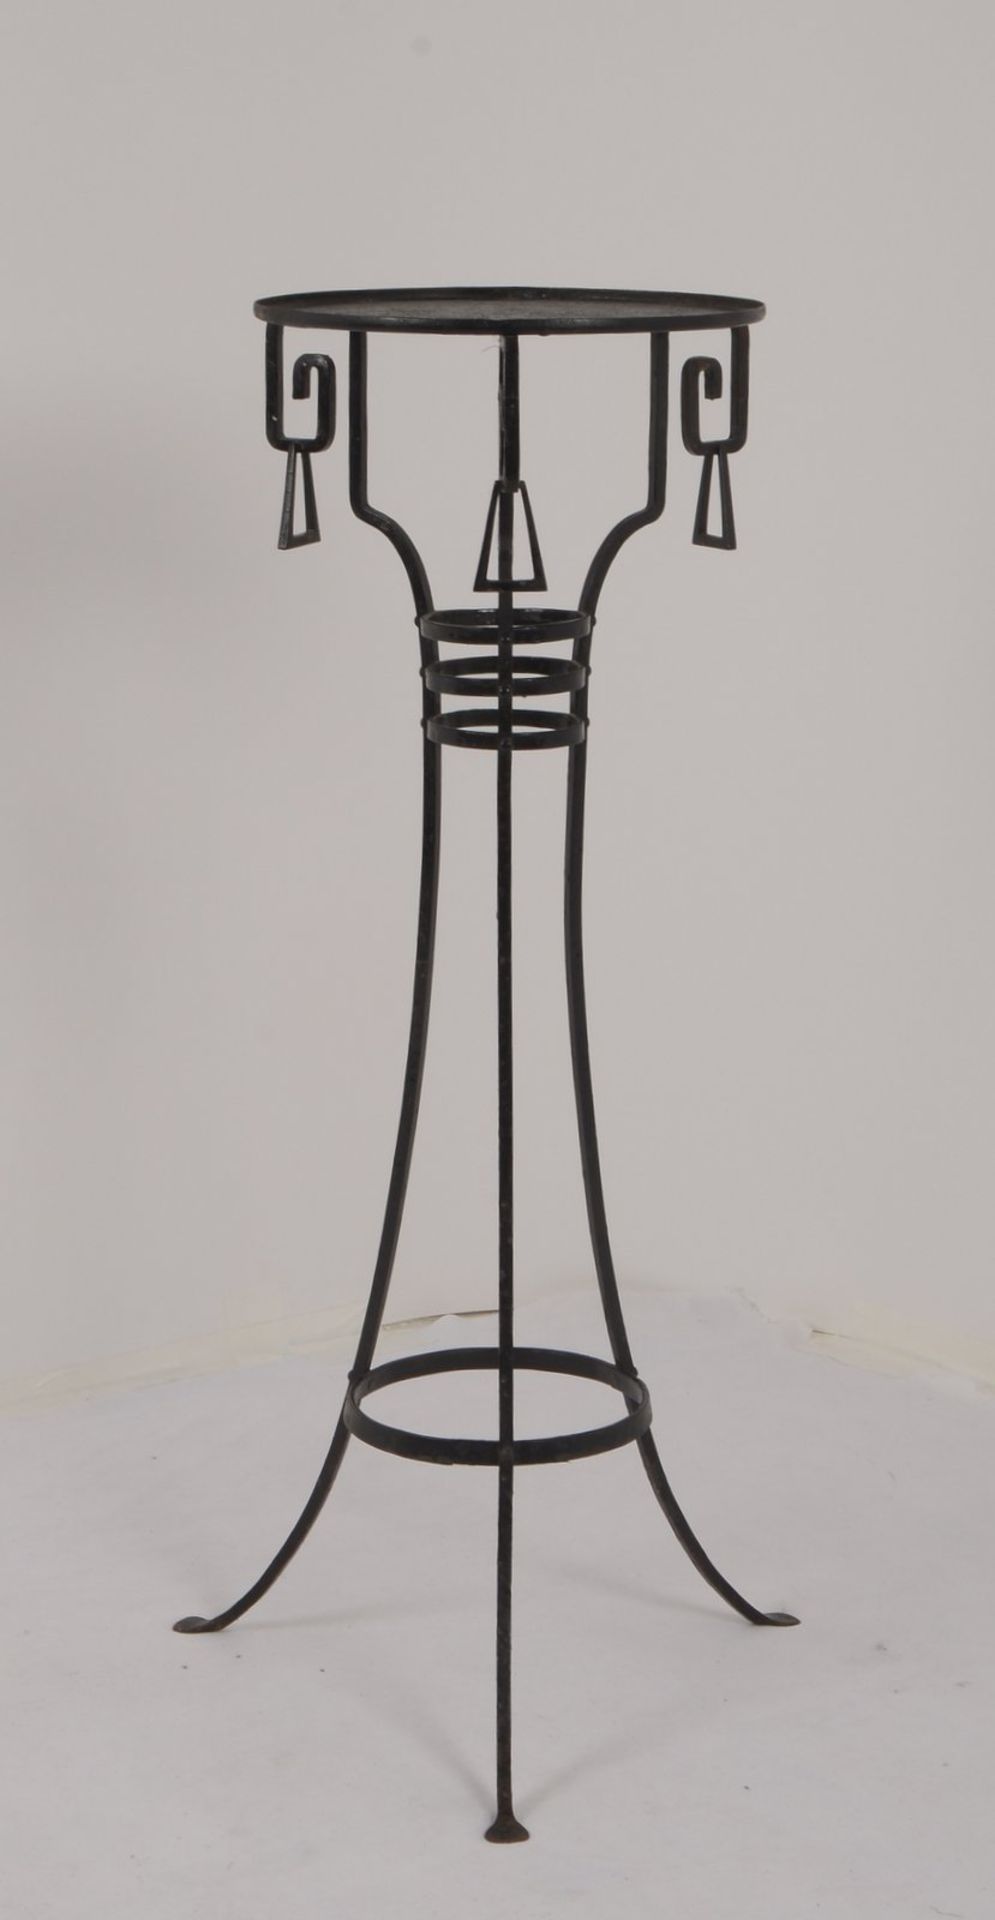 Blumentisch/Ständer (Art déco), Eisen geschwärzt, mit runder Abstellfläche; Höhe 80 cm, - Bild 2 aus 2